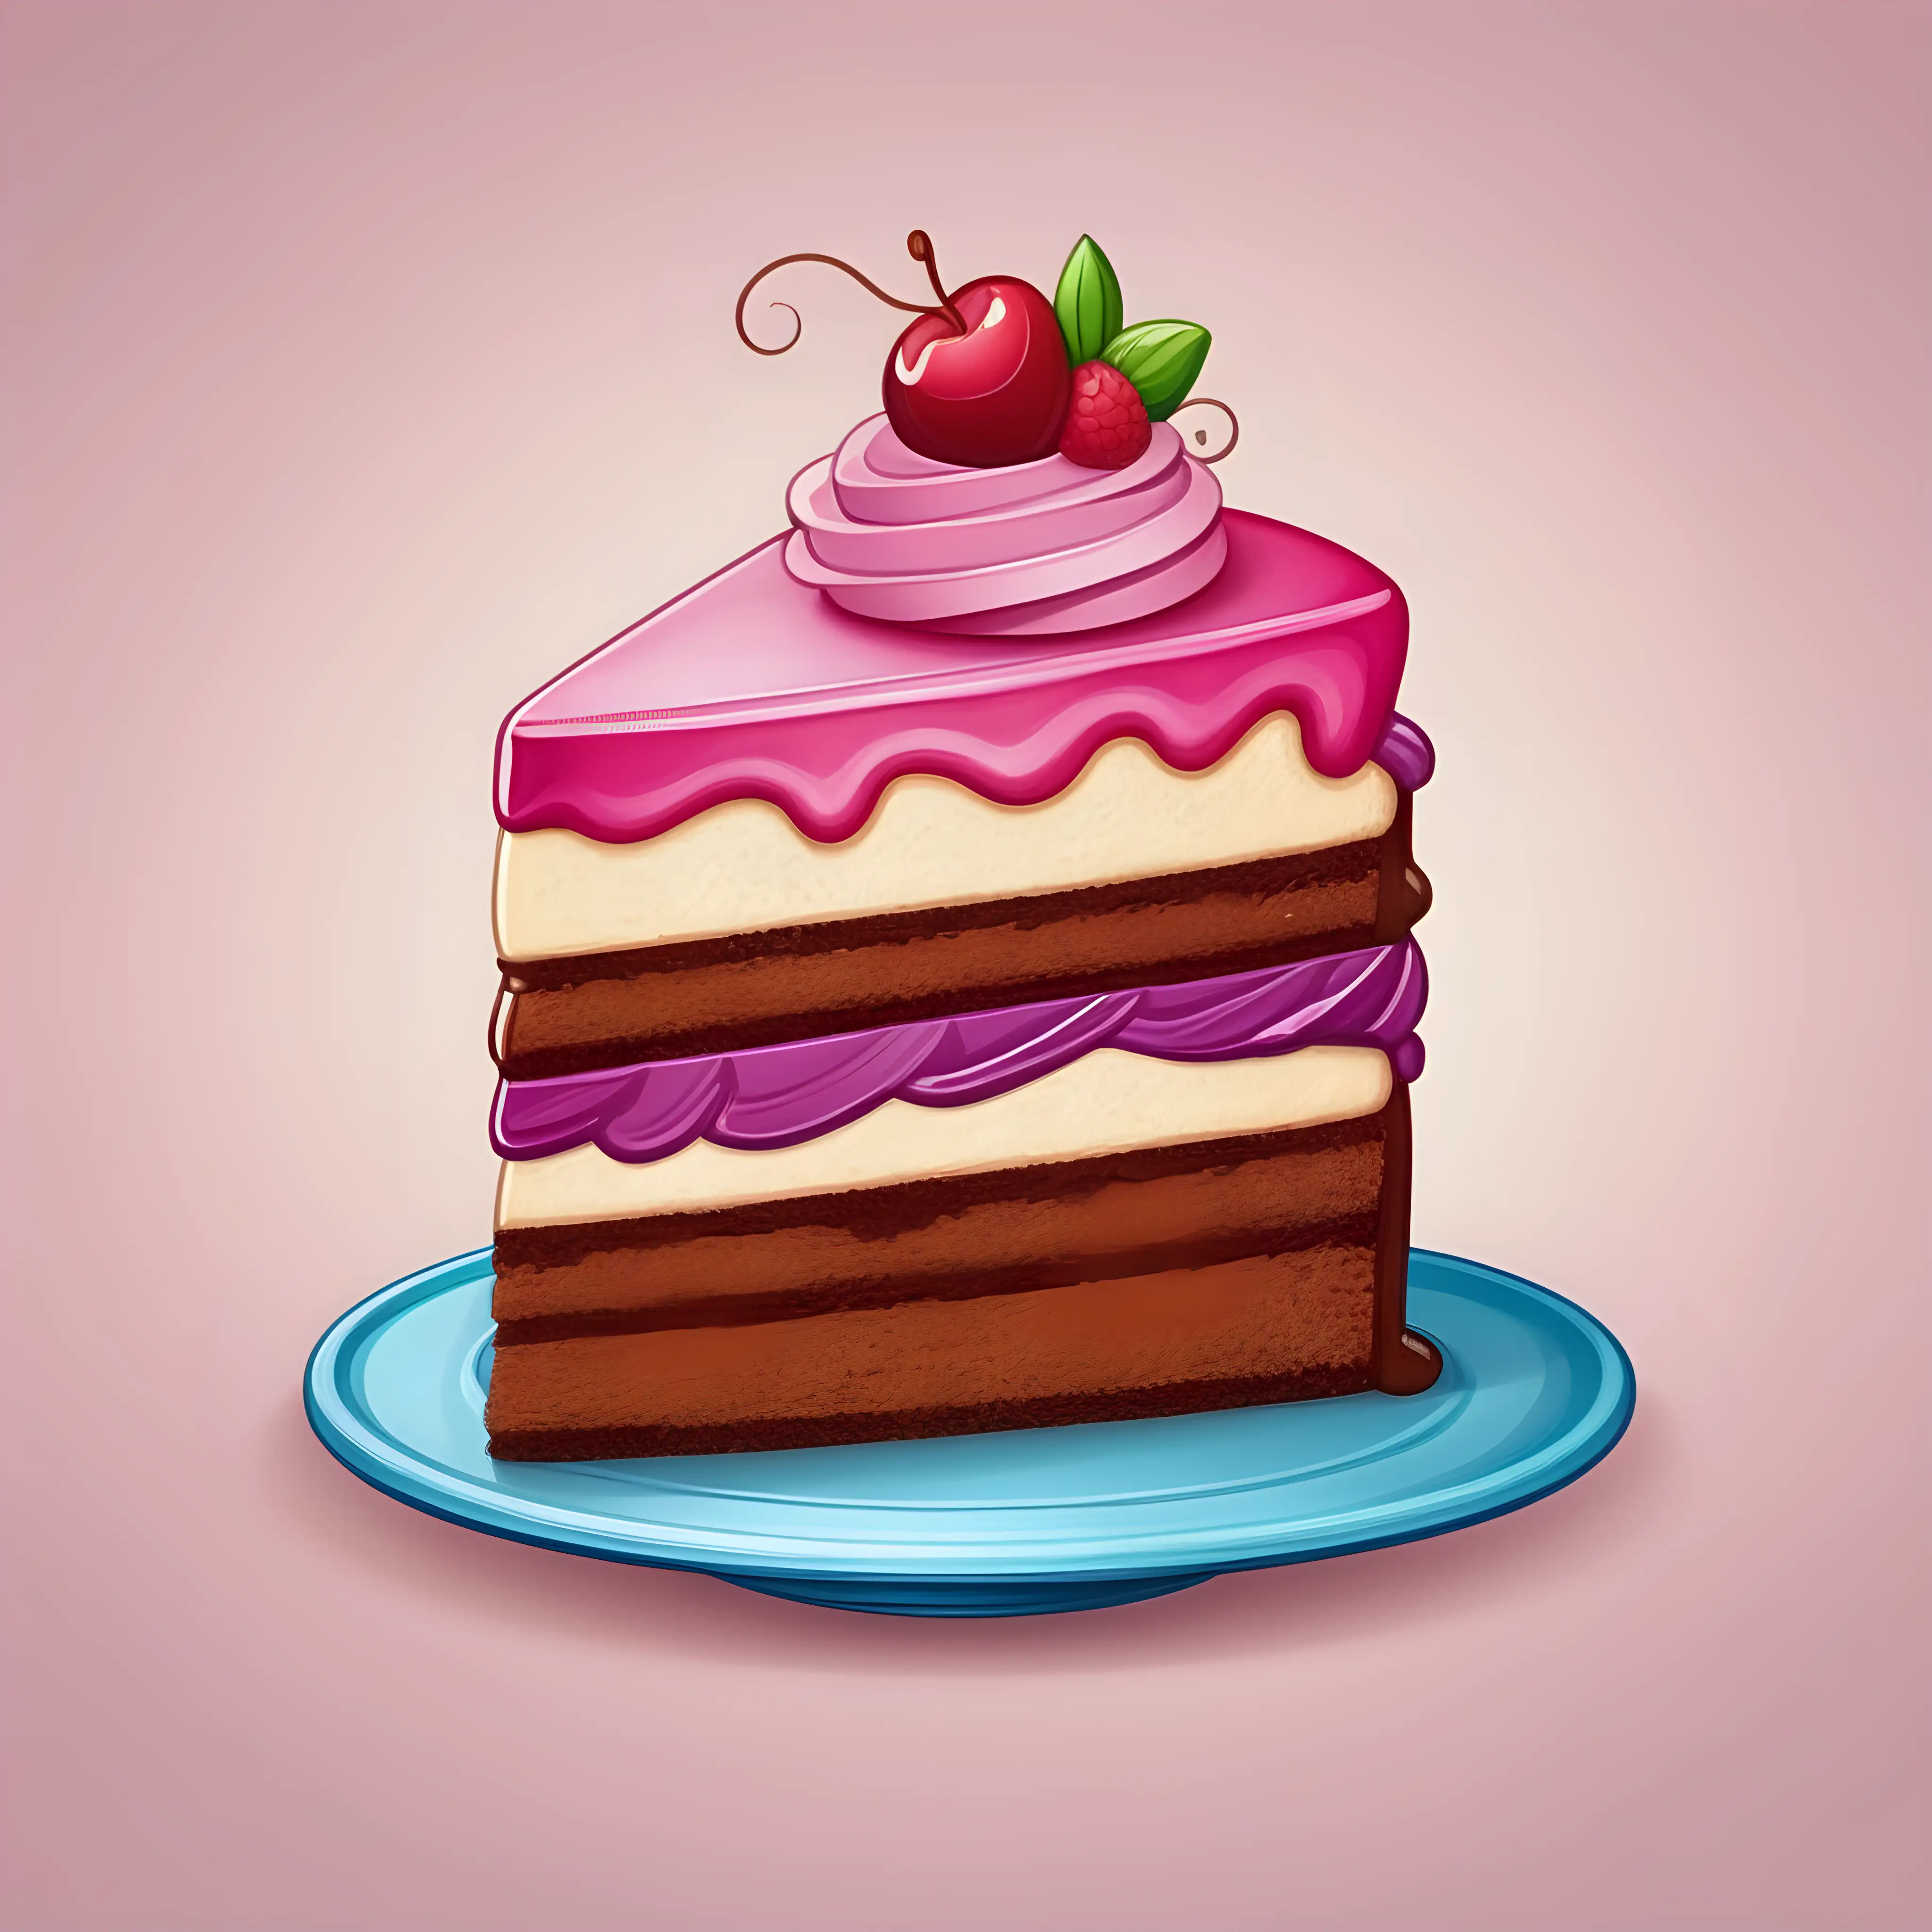 Cake icon Royalty Free Vector Image - VectorStock